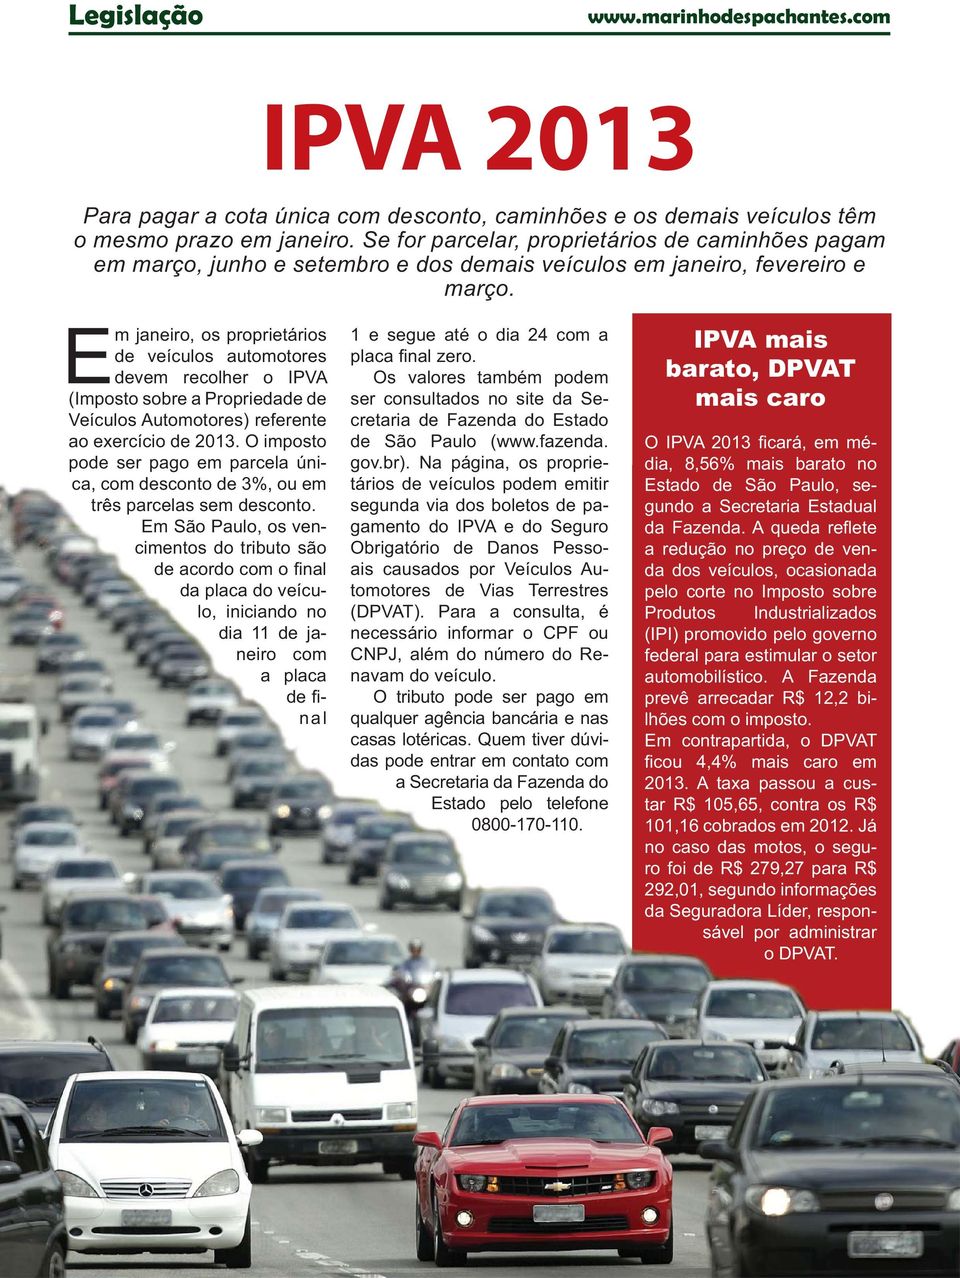 Em janeiro, os proprietários de veículos automotores devem recolher o IPVA (Imposto sobre a Propriedade de Veículos Automotores) referente ao exercício de 2013.